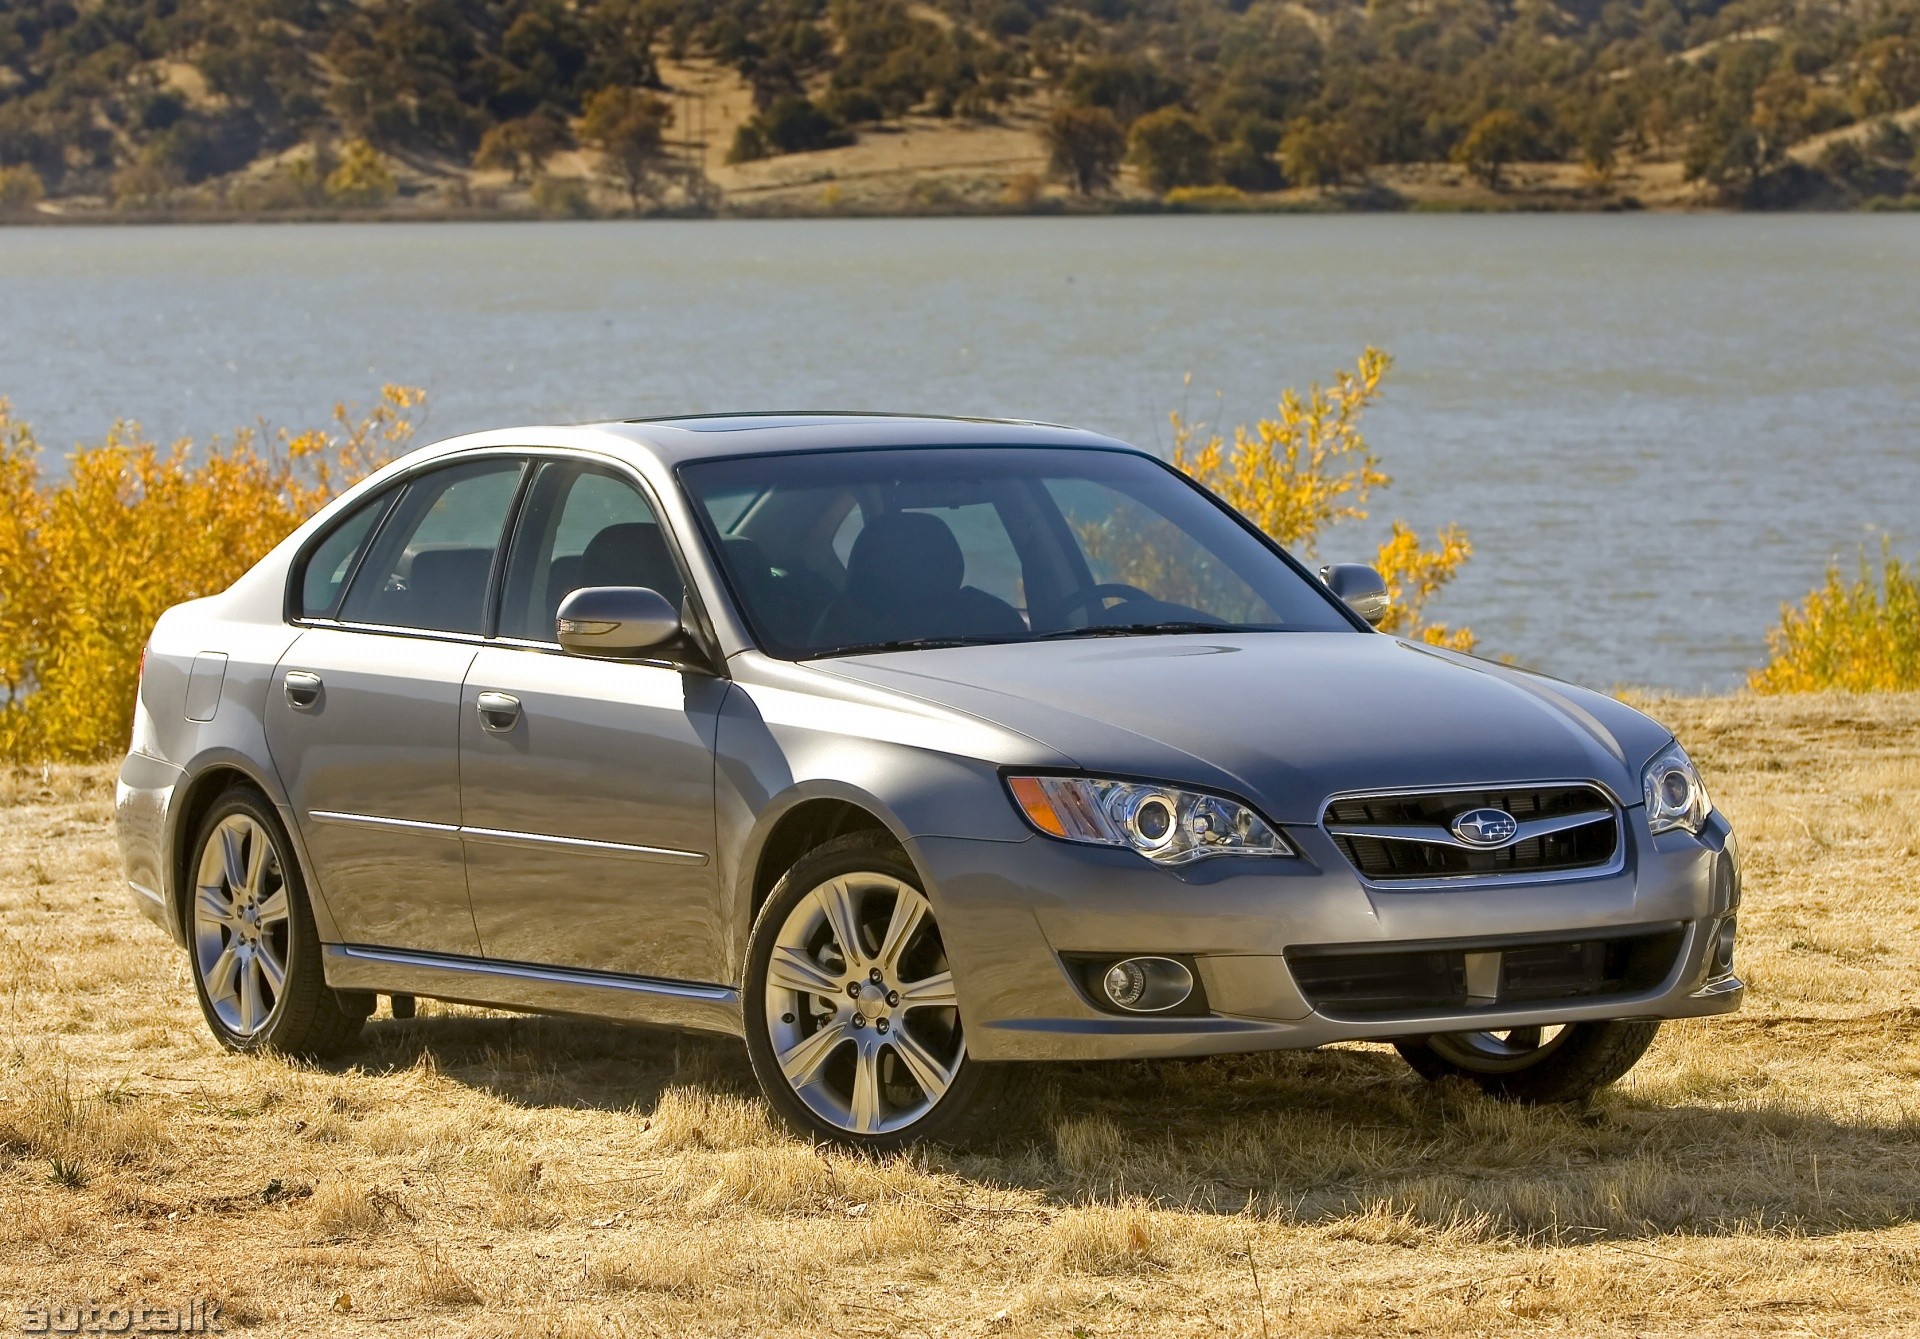 2009 Subaru Legacy 3.0 R